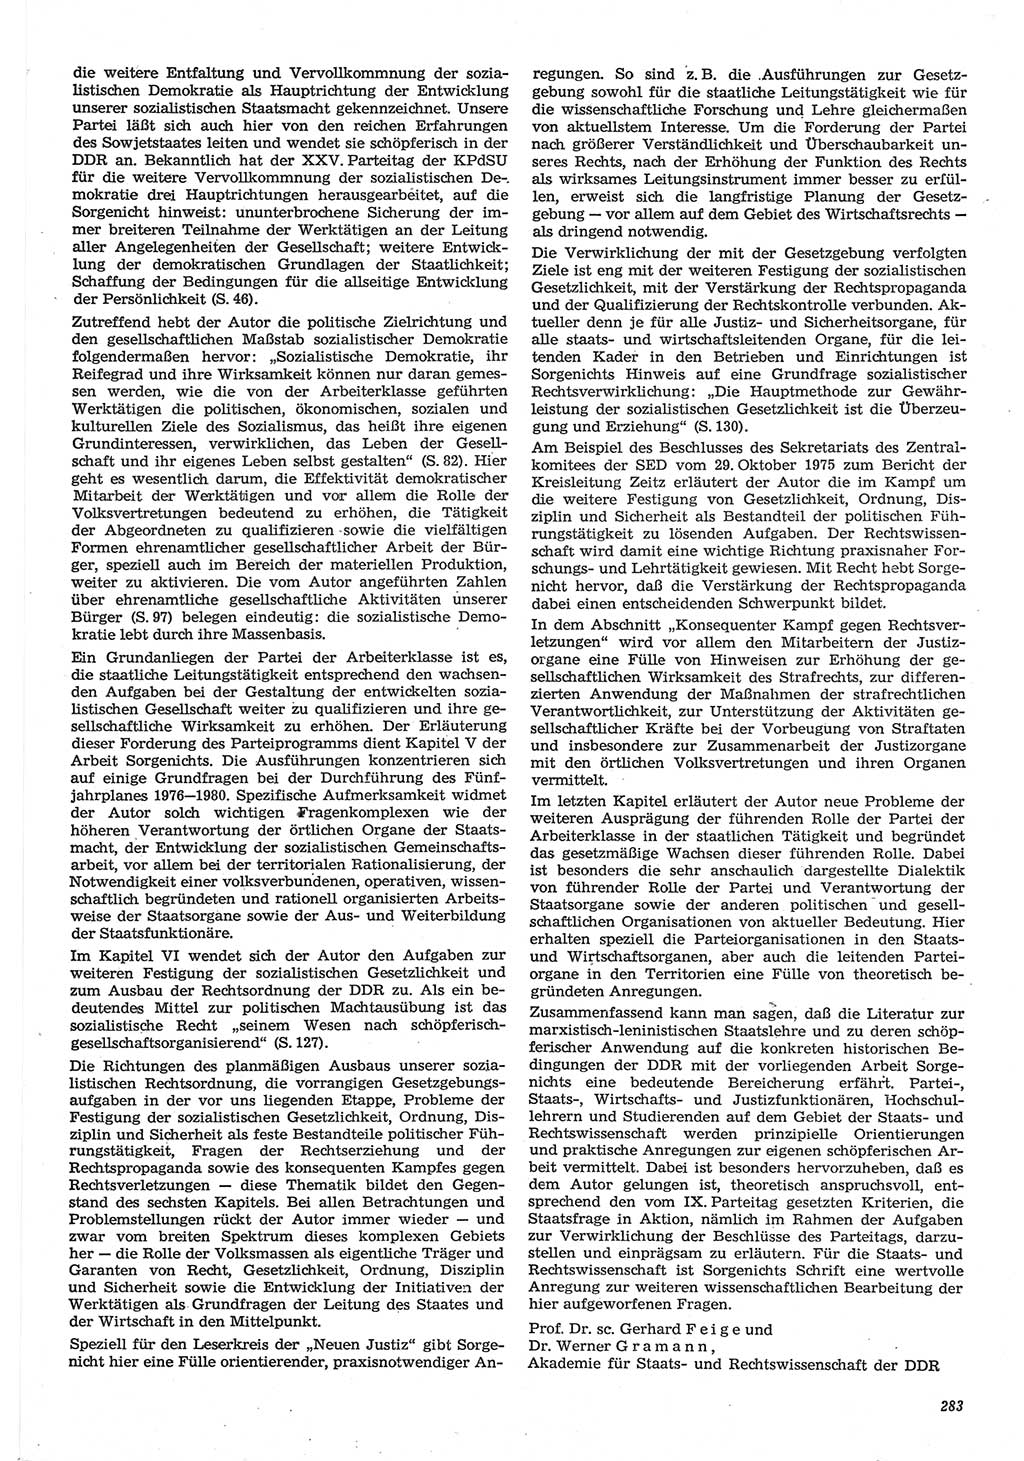 Neue Justiz (NJ), Zeitschrift für Recht und Rechtswissenschaft-Zeitschrift, sozialistisches Recht und Gesetzlichkeit, 31. Jahrgang 1977, Seite 283 (NJ DDR 1977, S. 283)